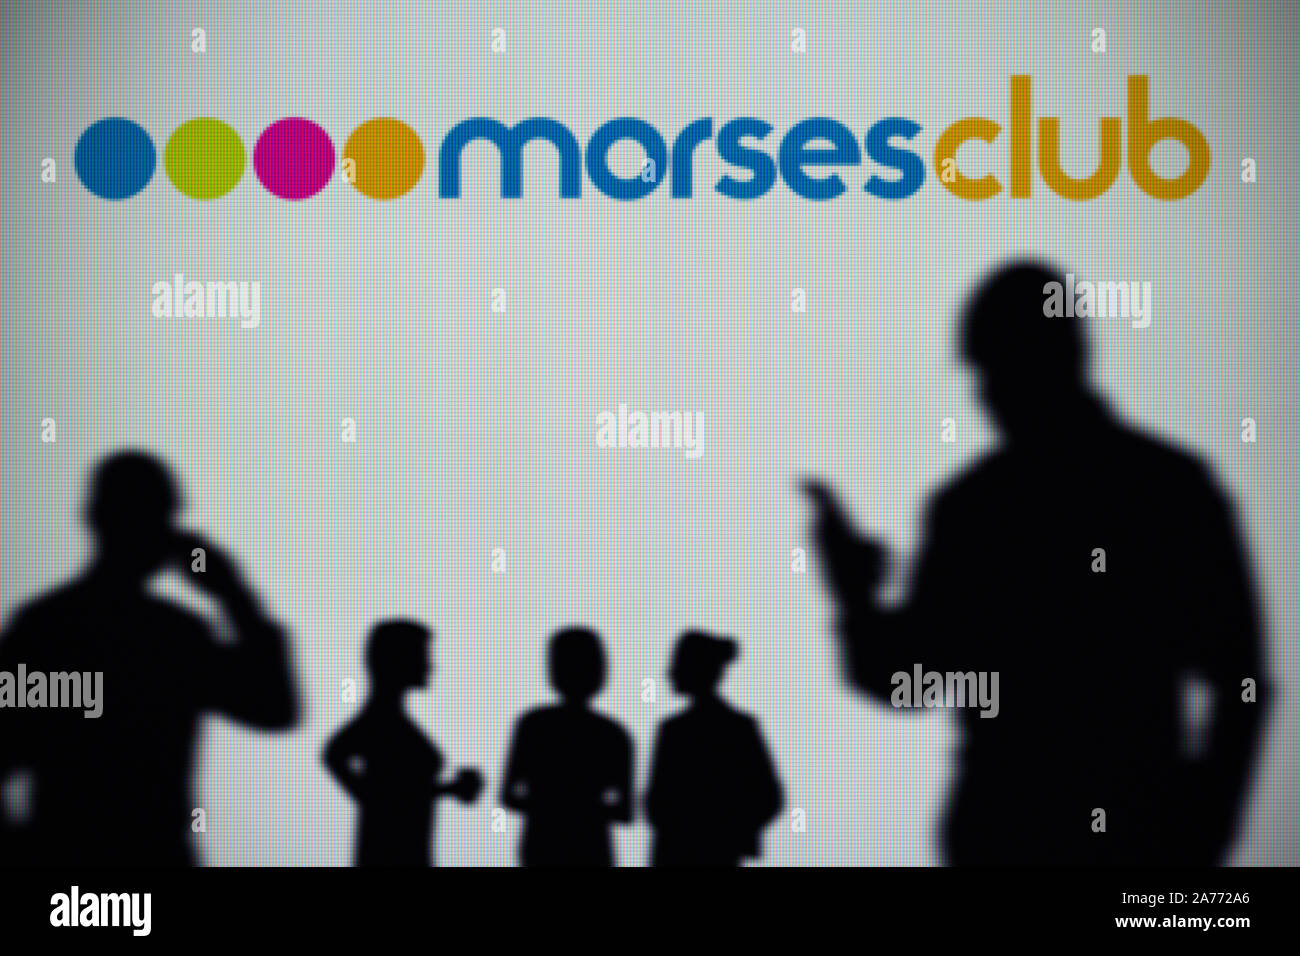 Die morses Club Logo ist auf einen LED-Bildschirm im Hintergrund, während eine Silhouette Person ein Smartphone verwendet (nur redaktionelle Nutzung) Stockfoto